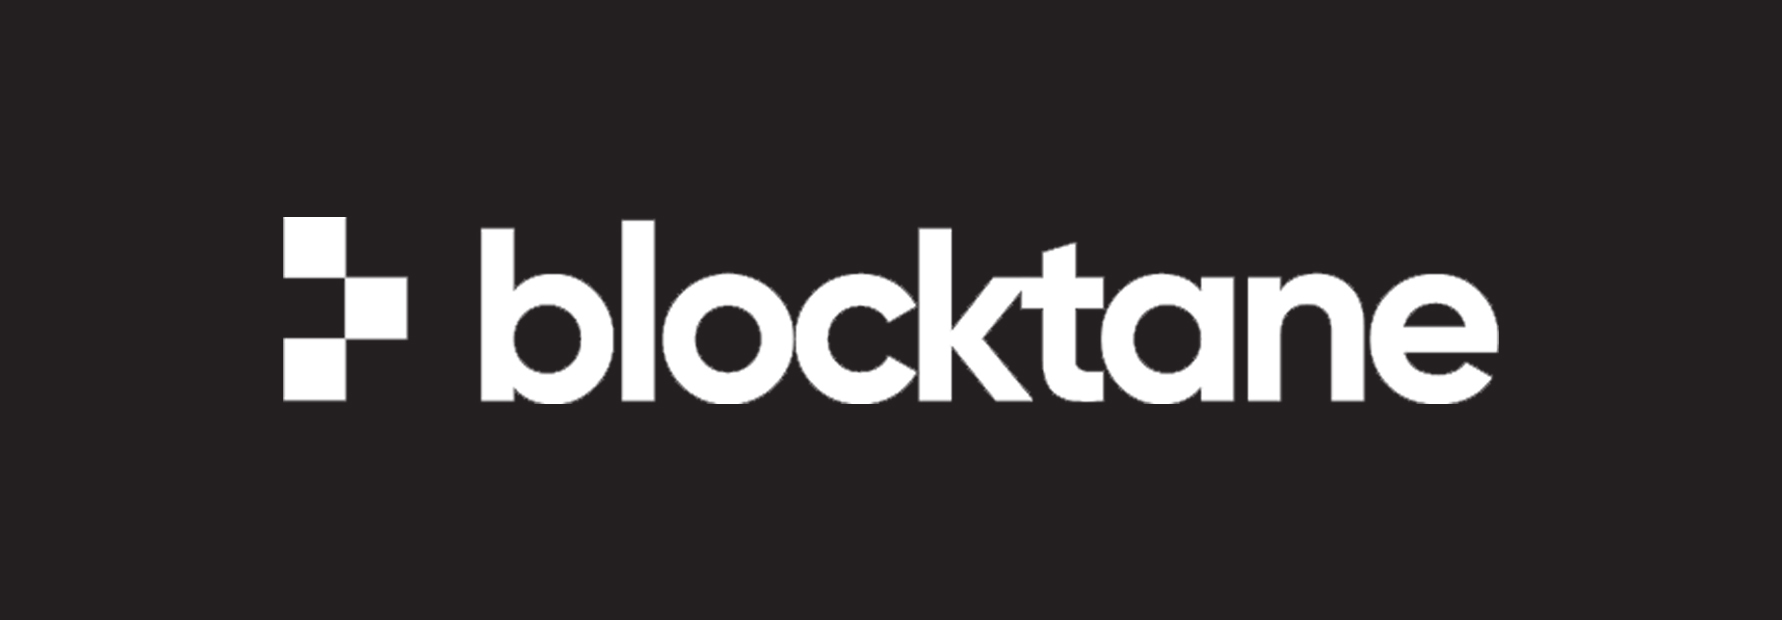 blocktane-logo.jpg